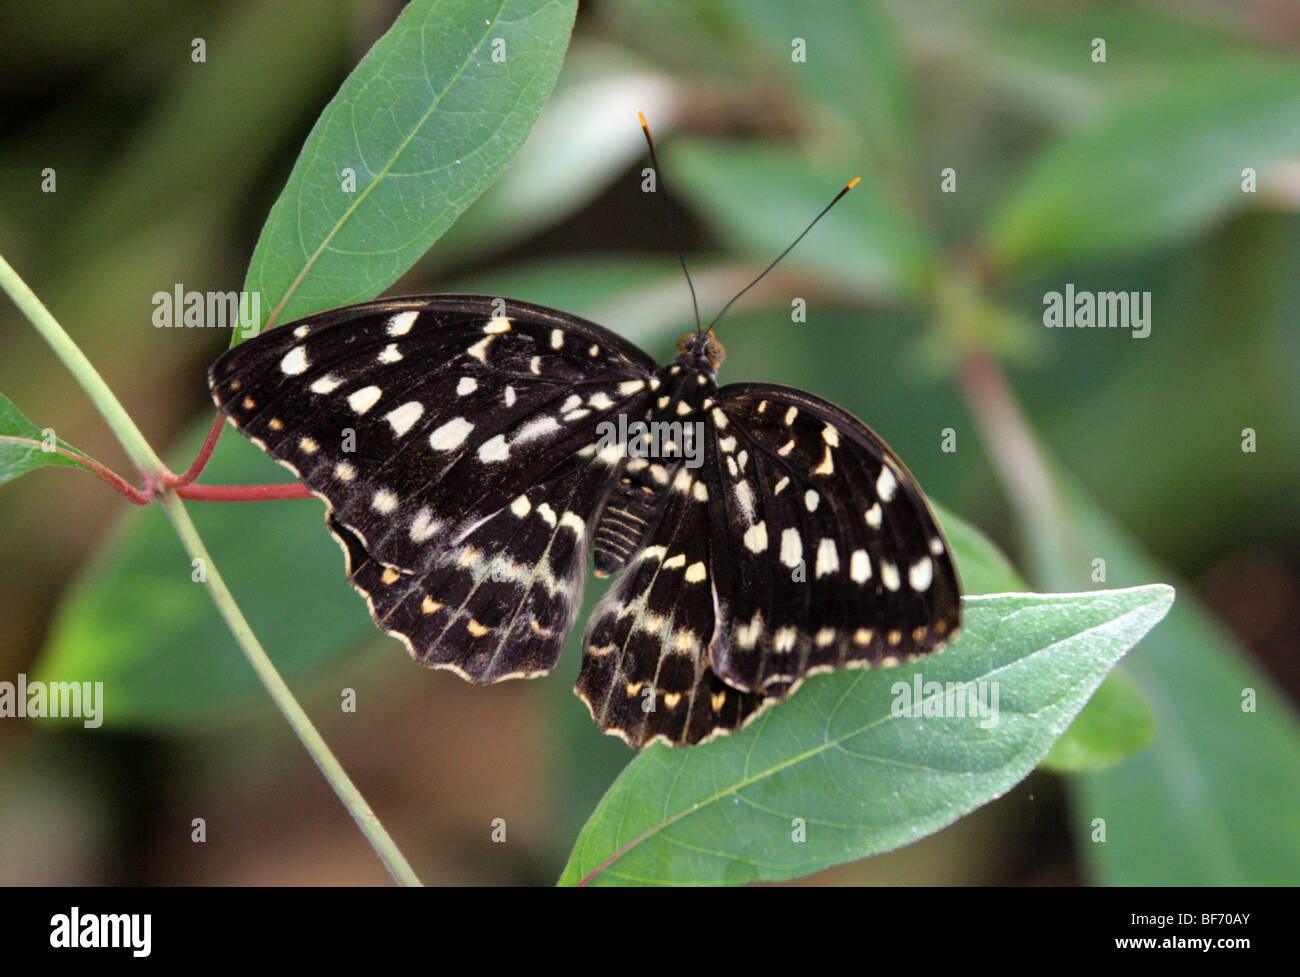 Der Erzherzog oder Hügel Erzherzog, Lexias Dirtea, Limenitidinae, Nymphalidae, Süd-Ost-Asien. (Weiblich) Stockfoto